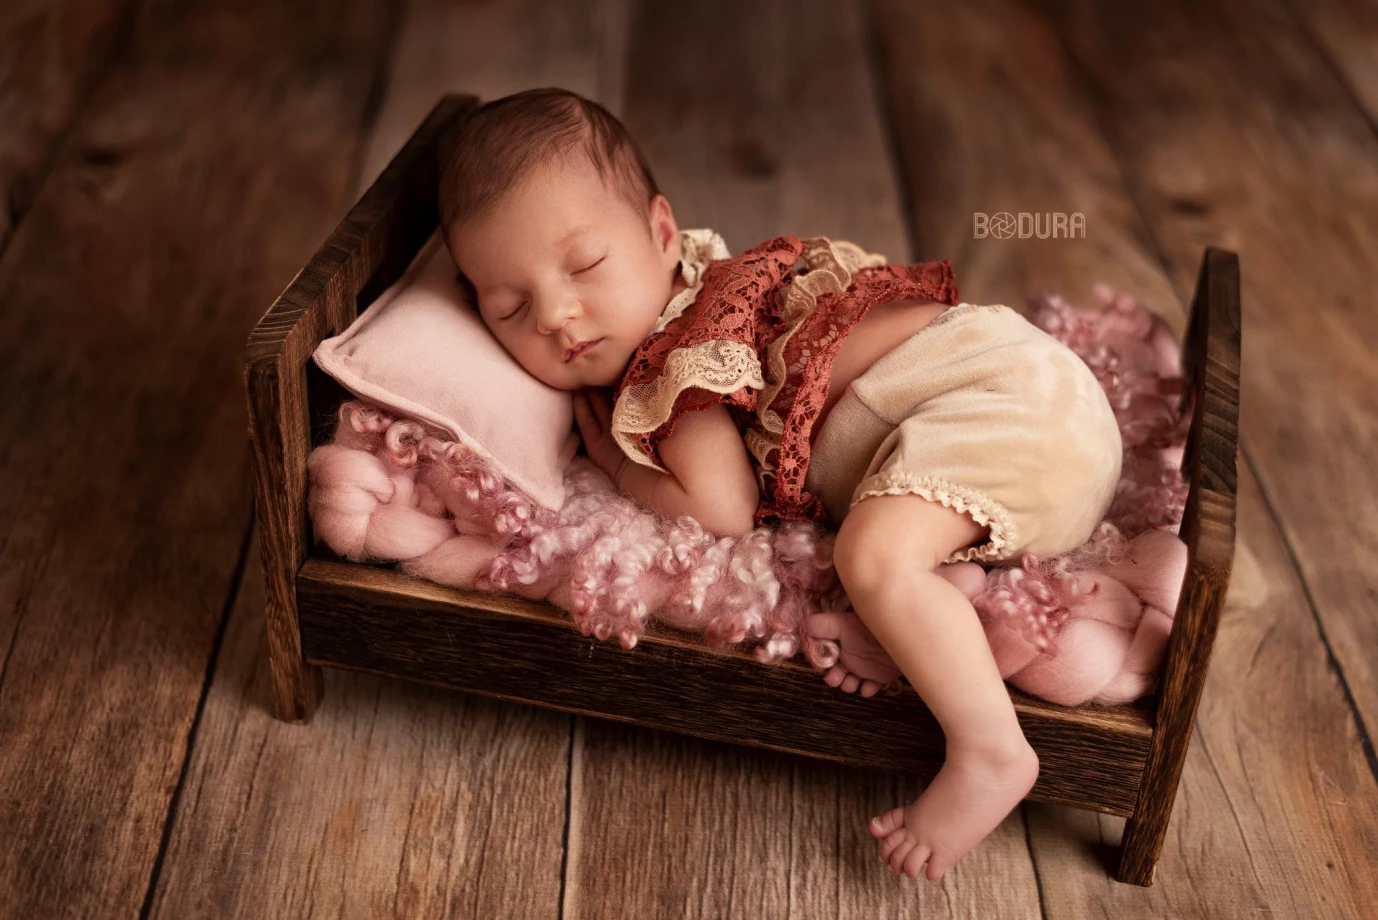 zdjęcia  fotograf anita-bodura portfolio zdjecia noworodkow sesje noworodkowe niemowlę